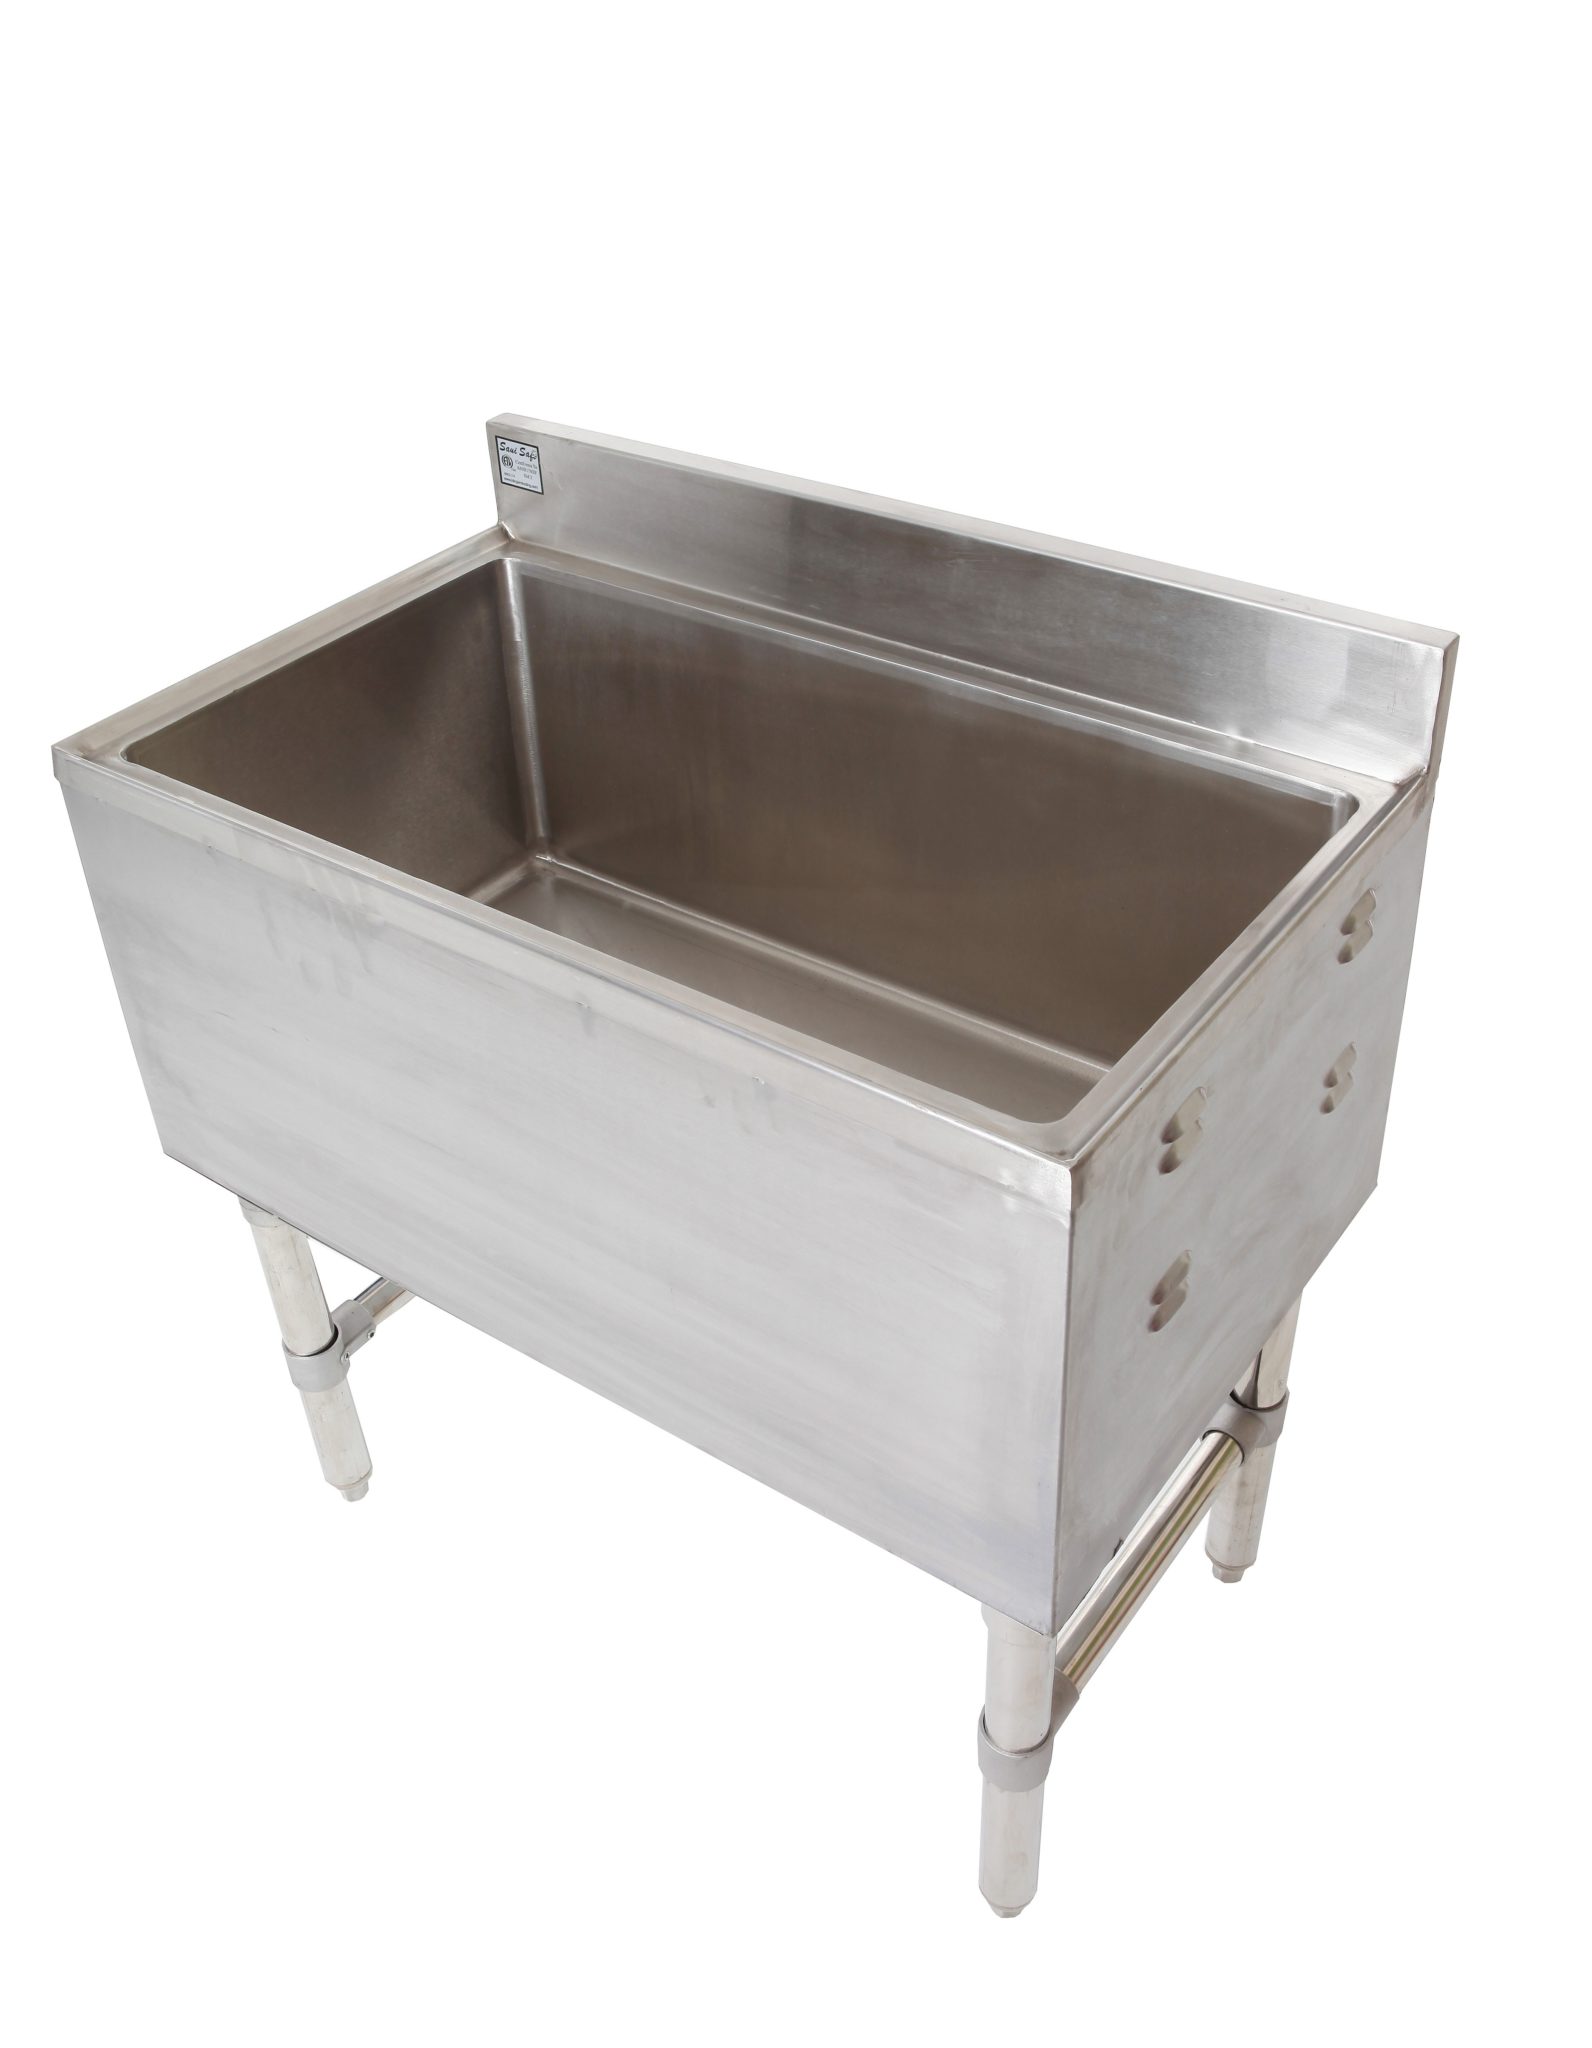 under bar ice chest bin